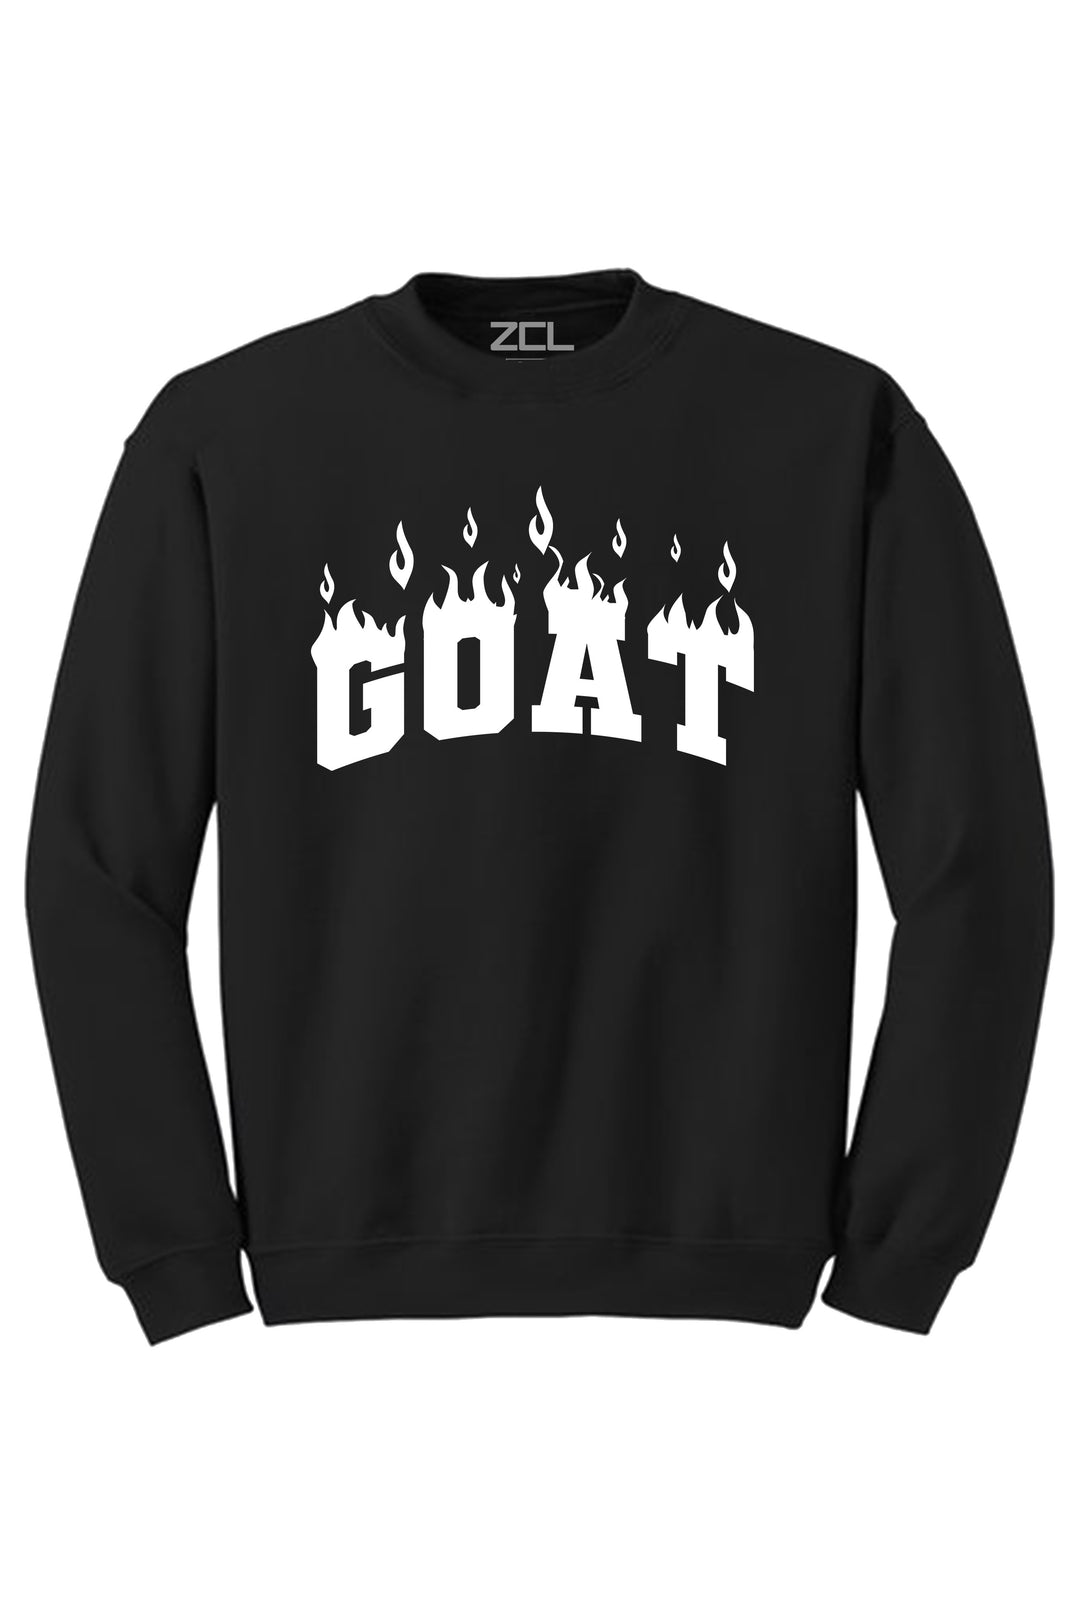 Goat Flame Crewneck Sweatshirt (White Logo) - Zamage